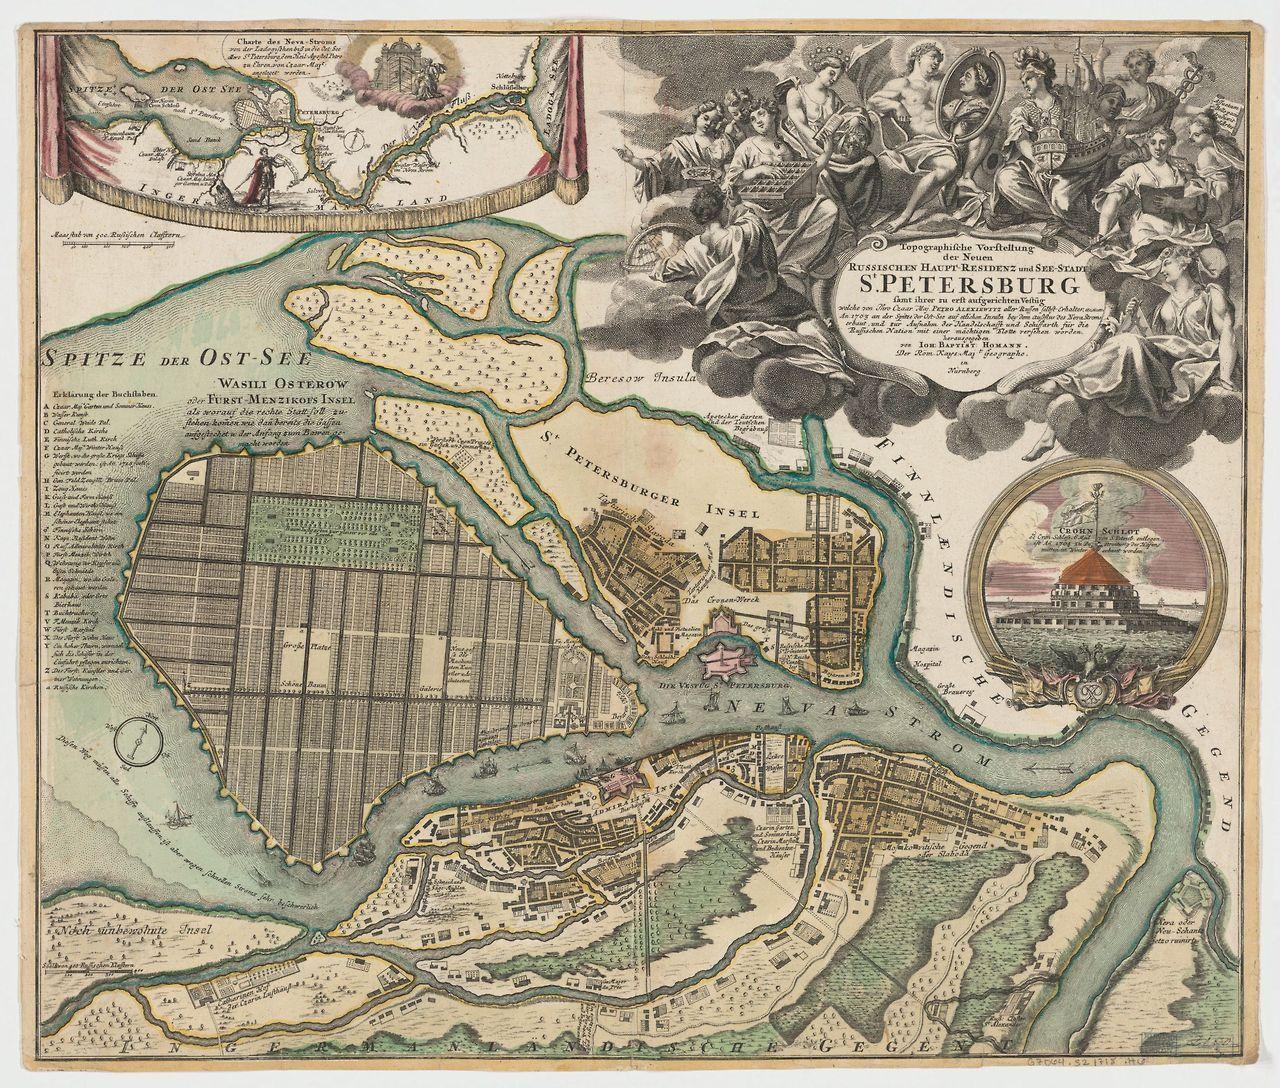 Старая карта васильевского острова